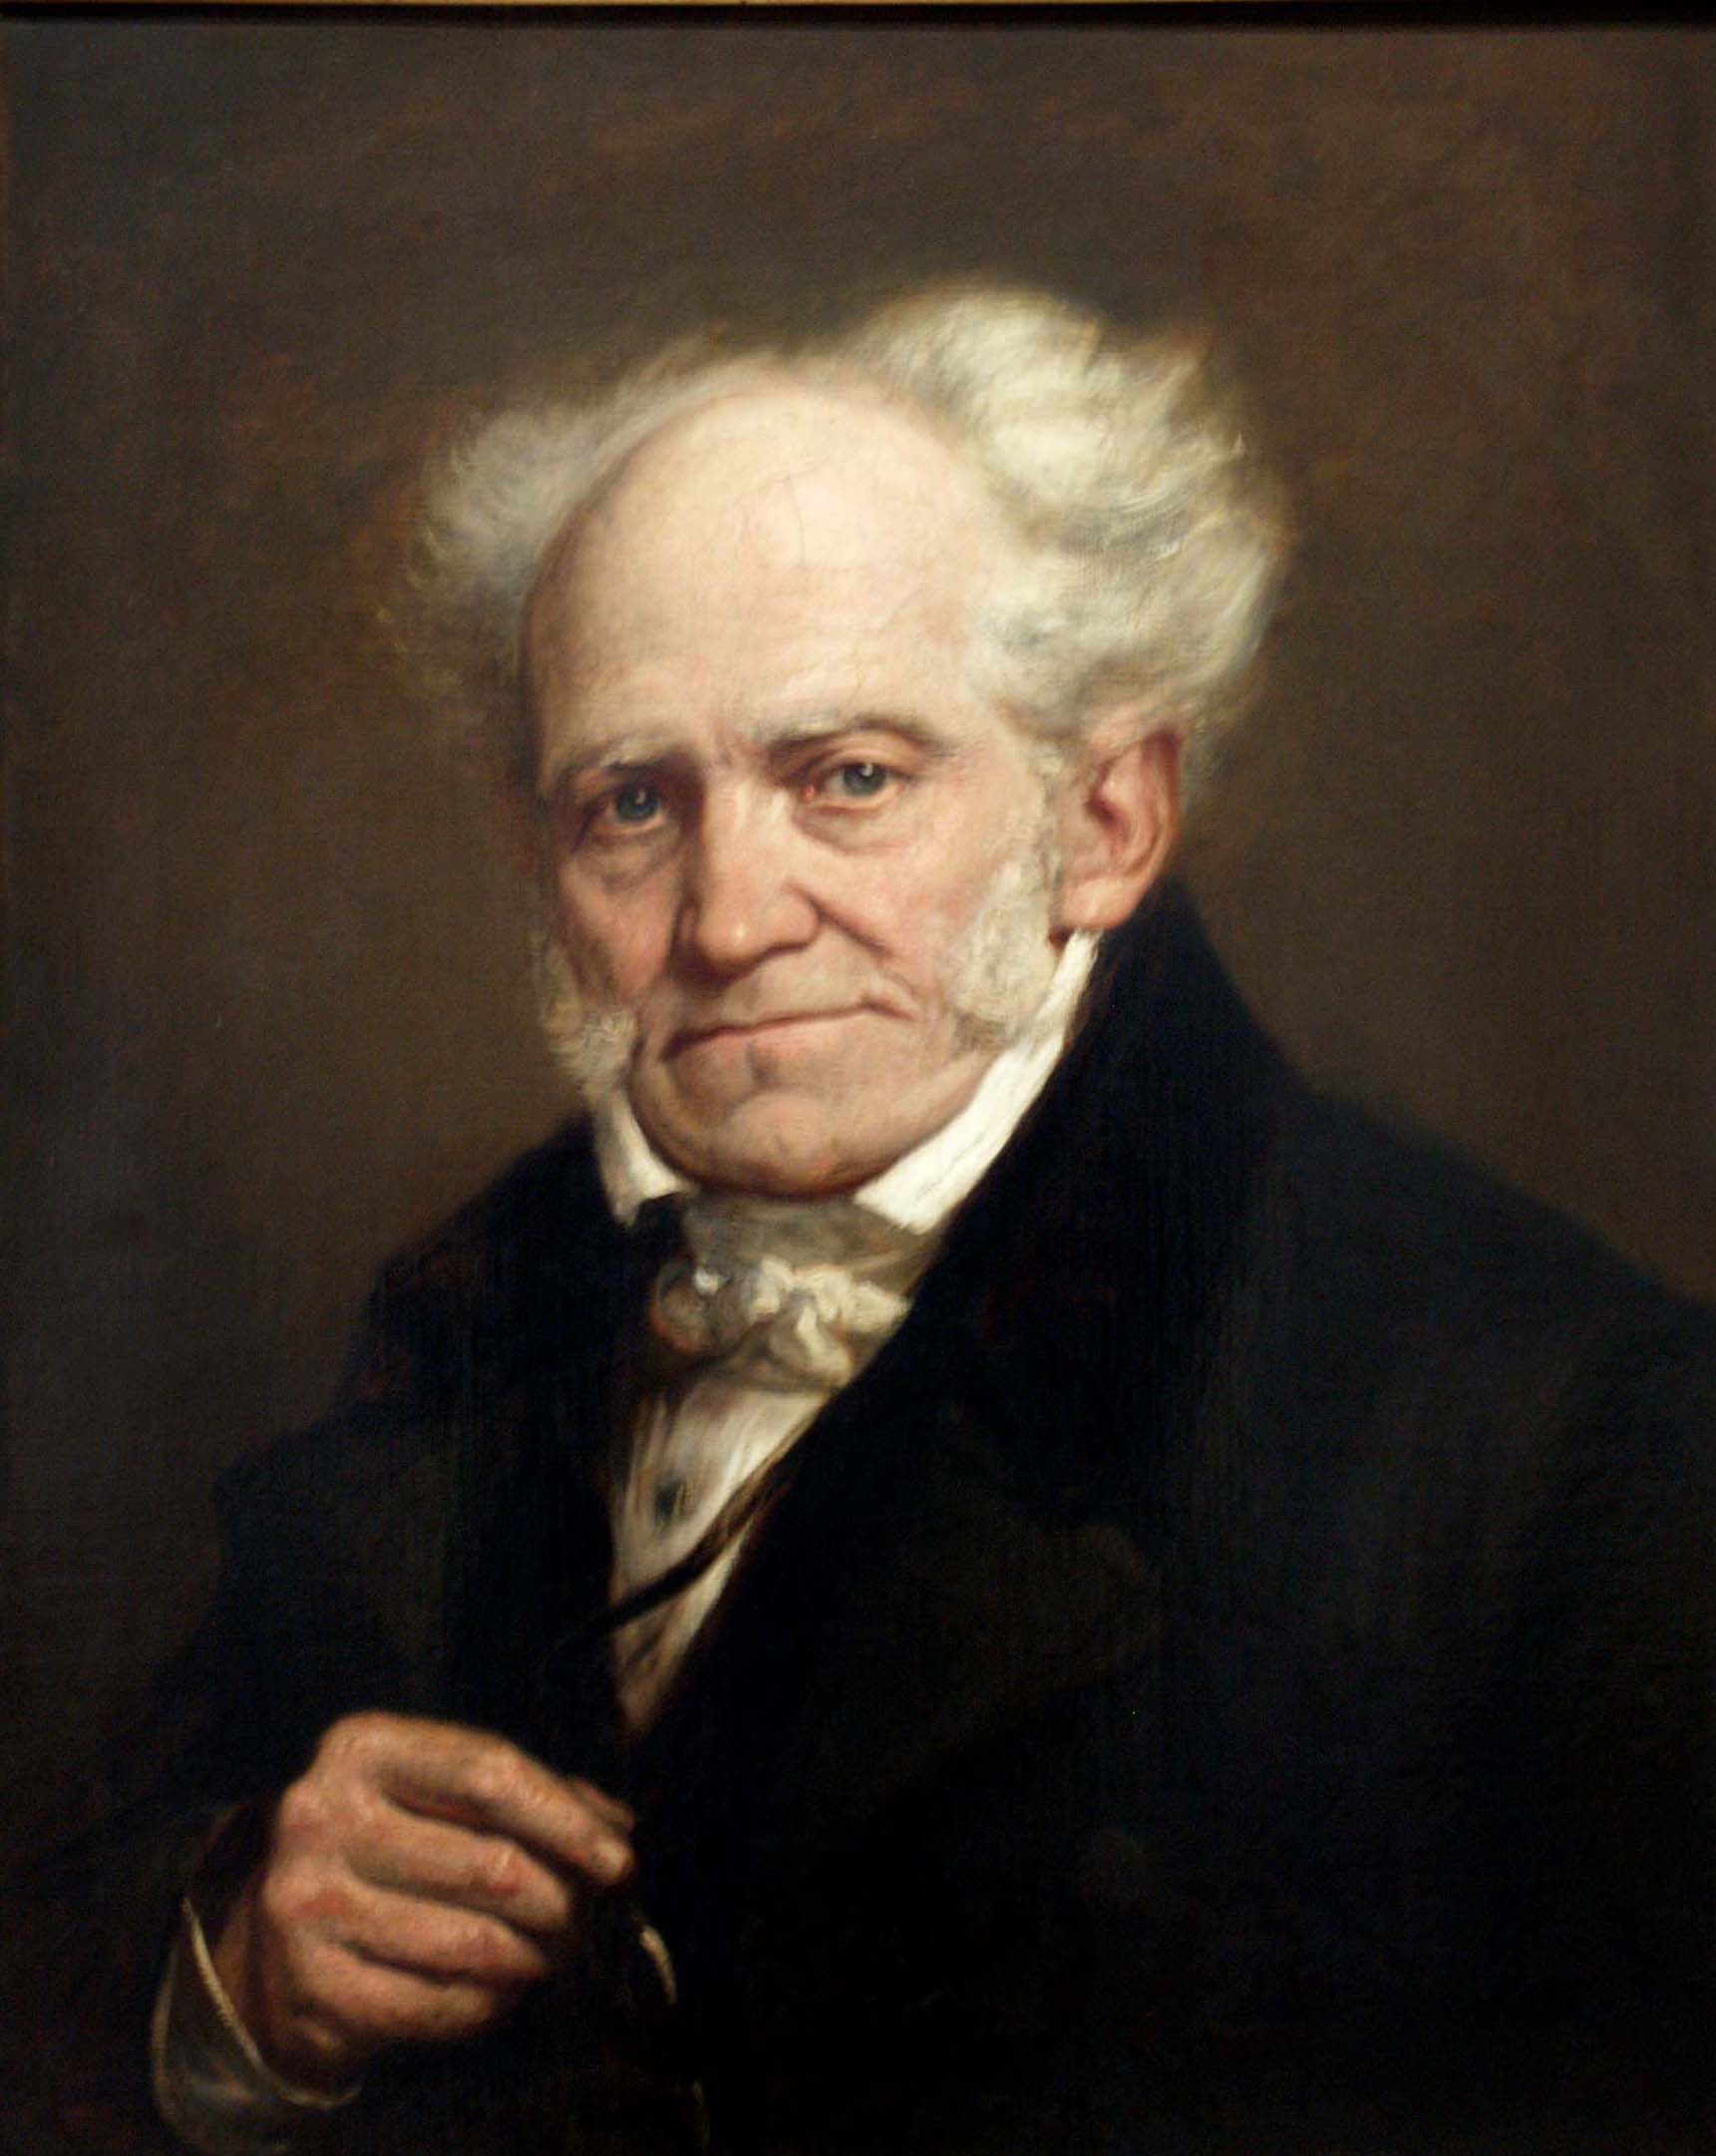 “Le stelle fiammeggiano su mondi dominati dal dolore”: l’insostenibile grandezza di Schopenhauer e le sue sculacciate